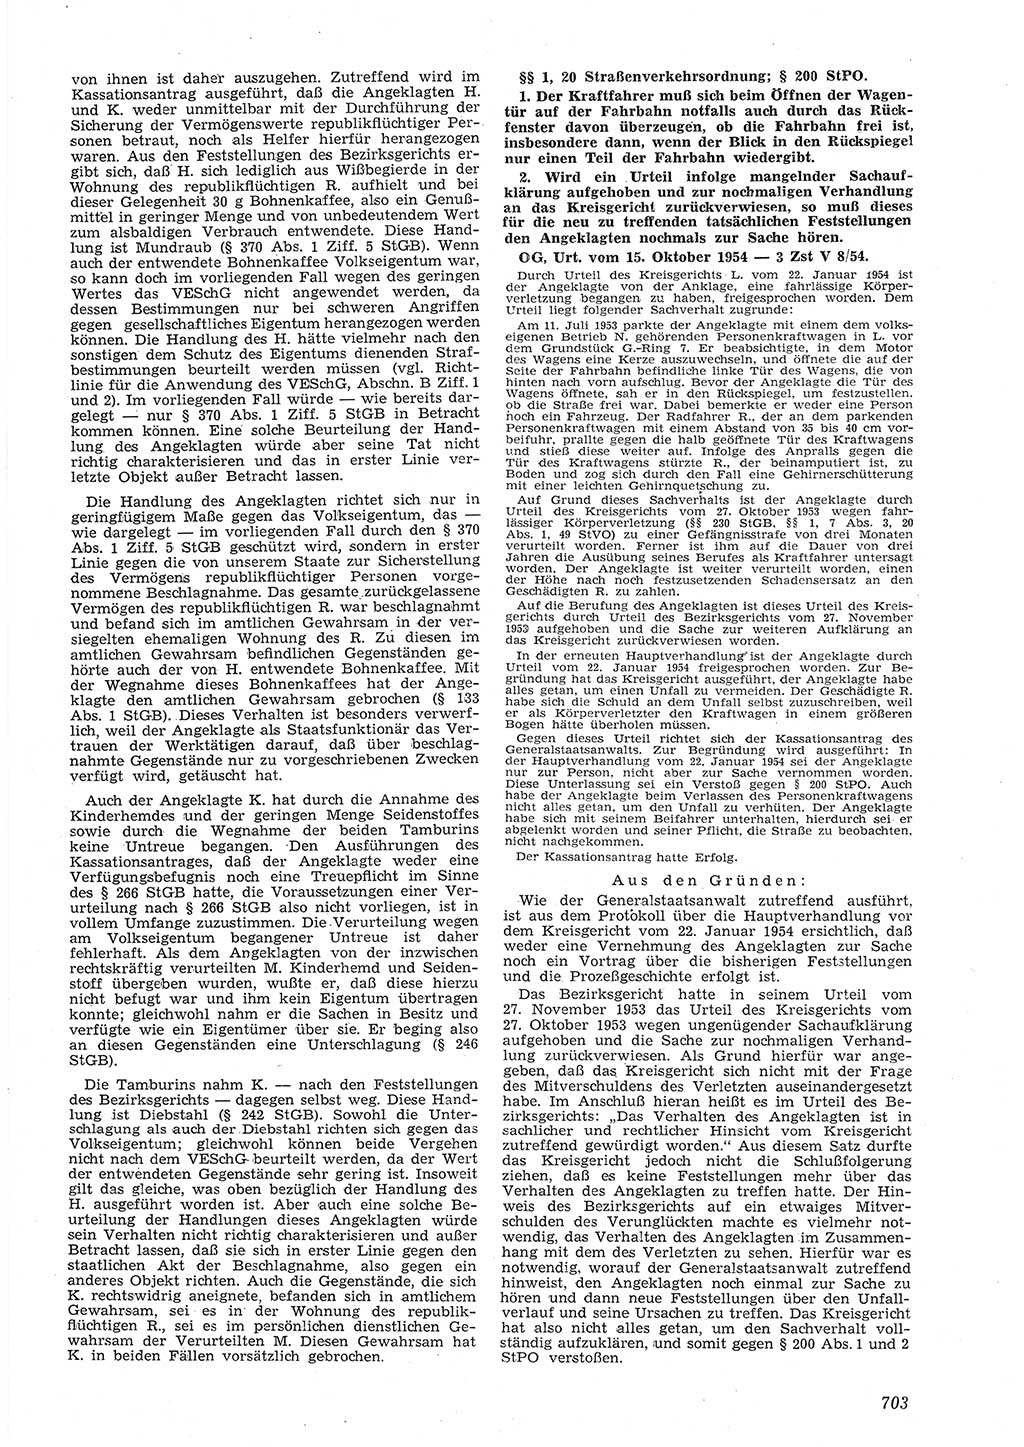 Neue Justiz (NJ), Zeitschrift für Recht und Rechtswissenschaft [Deutsche Demokratische Republik (DDR)], 8. Jahrgang 1954, Seite 703 (NJ DDR 1954, S. 703)